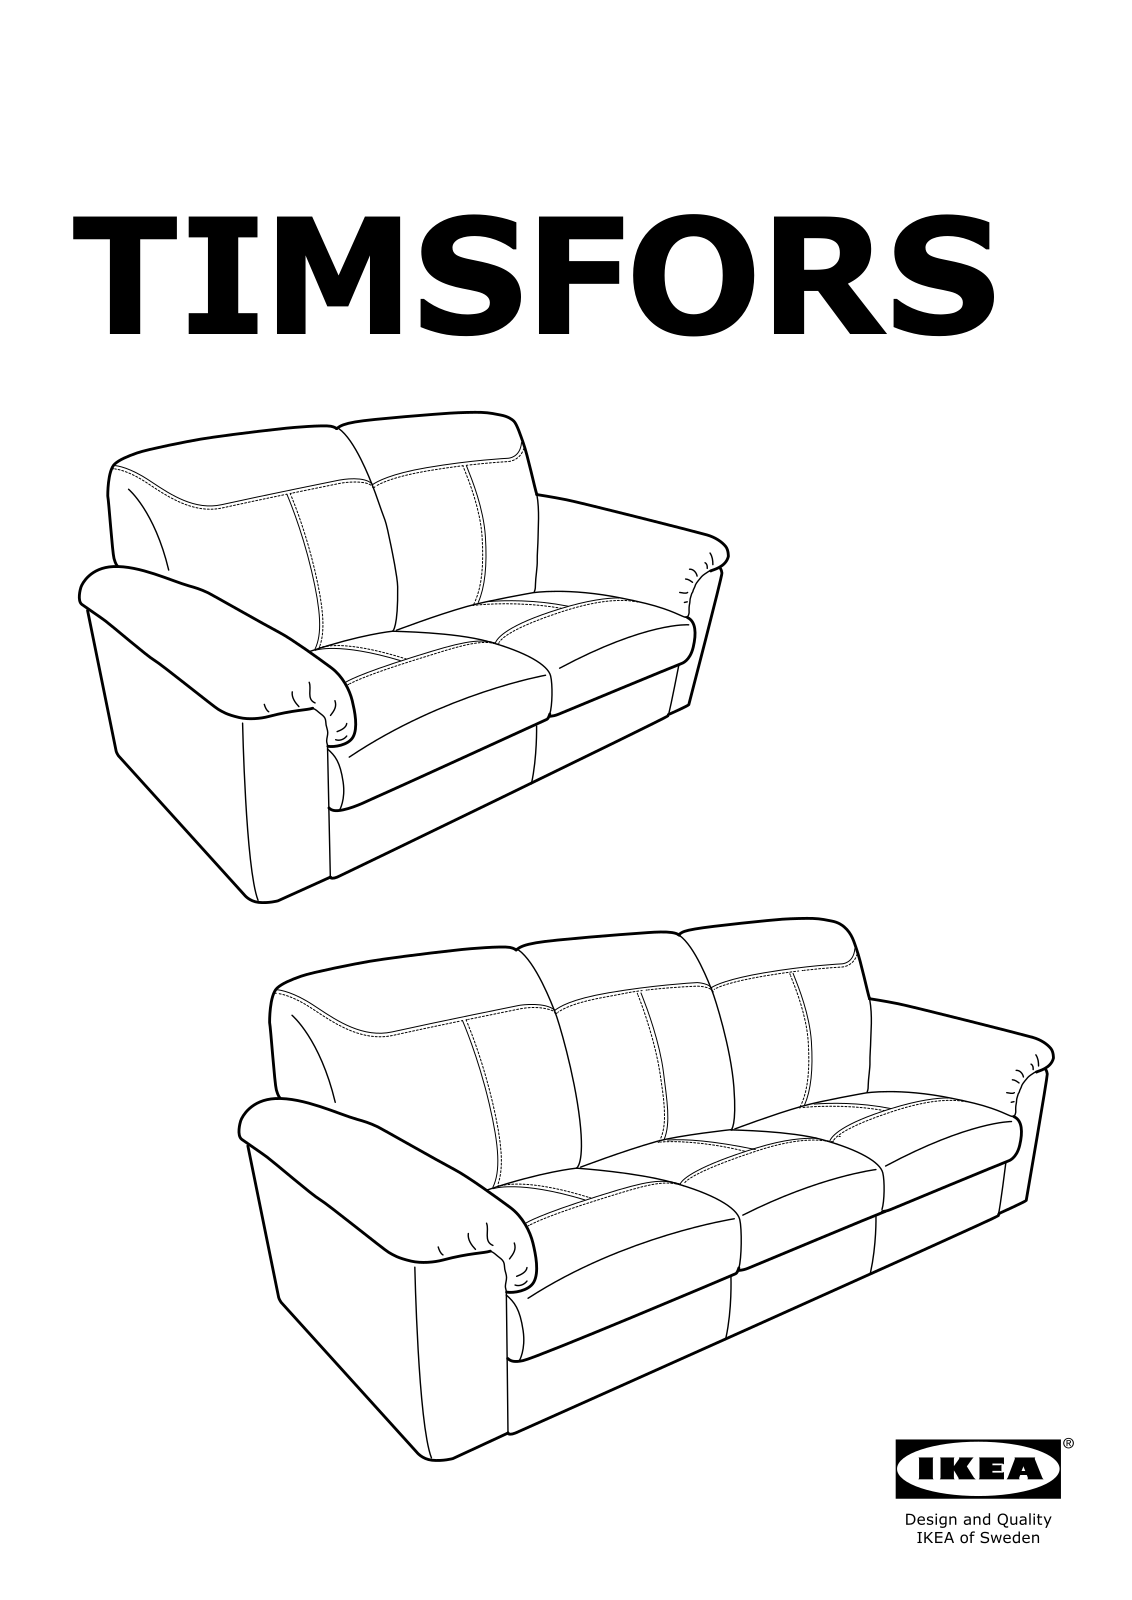 IKEA TIMSFORS User Manual